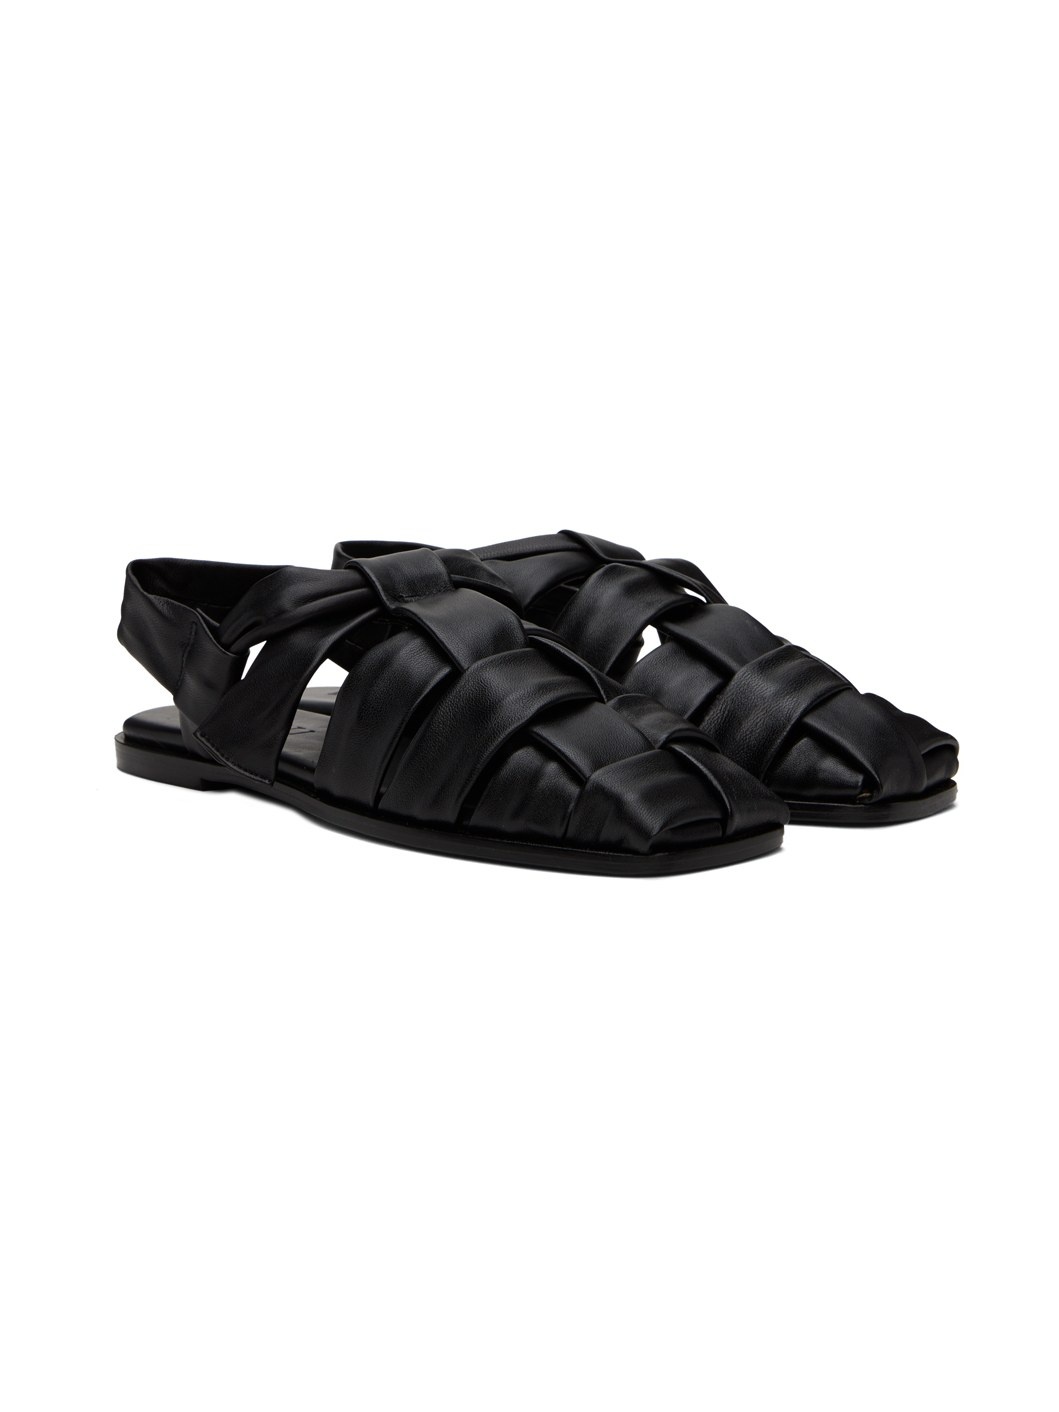 Black Bena Sandals - 4